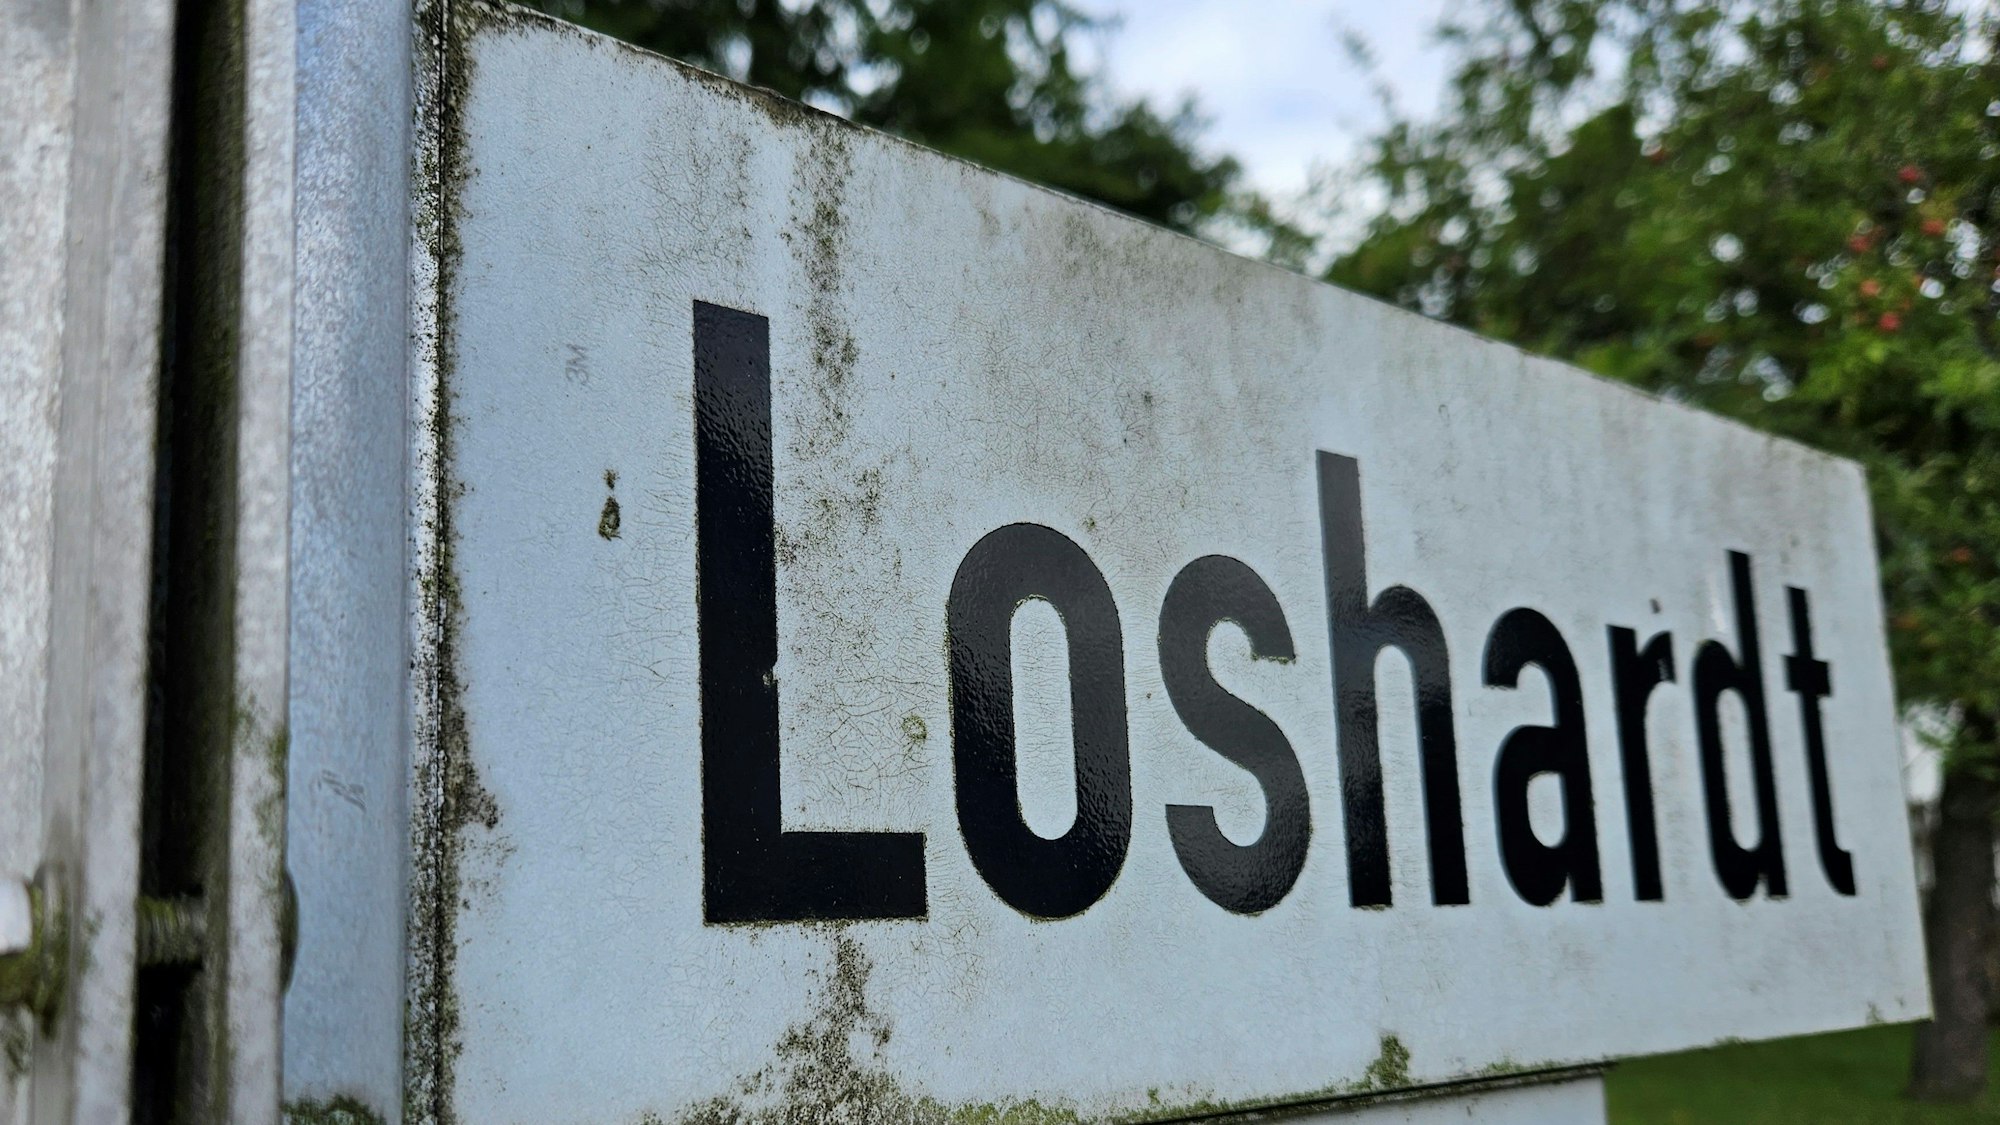 Zu sehen ist ein Straßenschild mit dem Namen Loshardt.